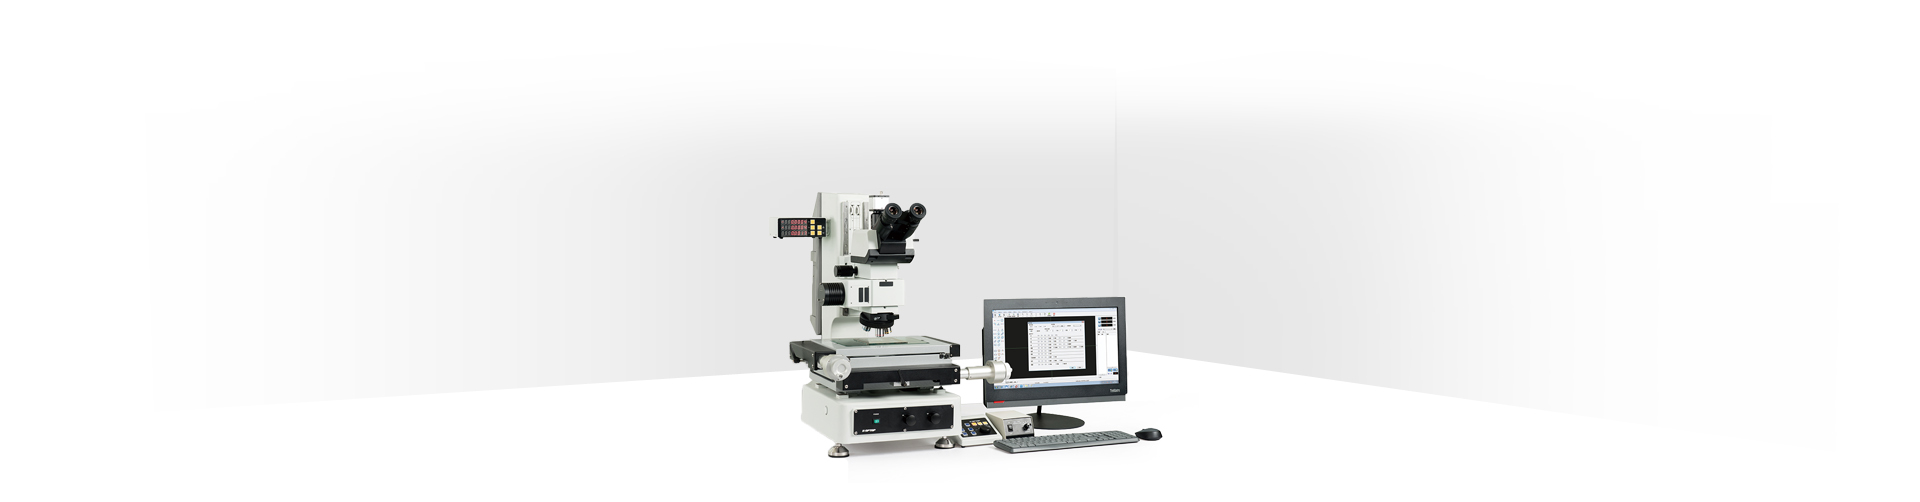 MS 系列测量显微镜